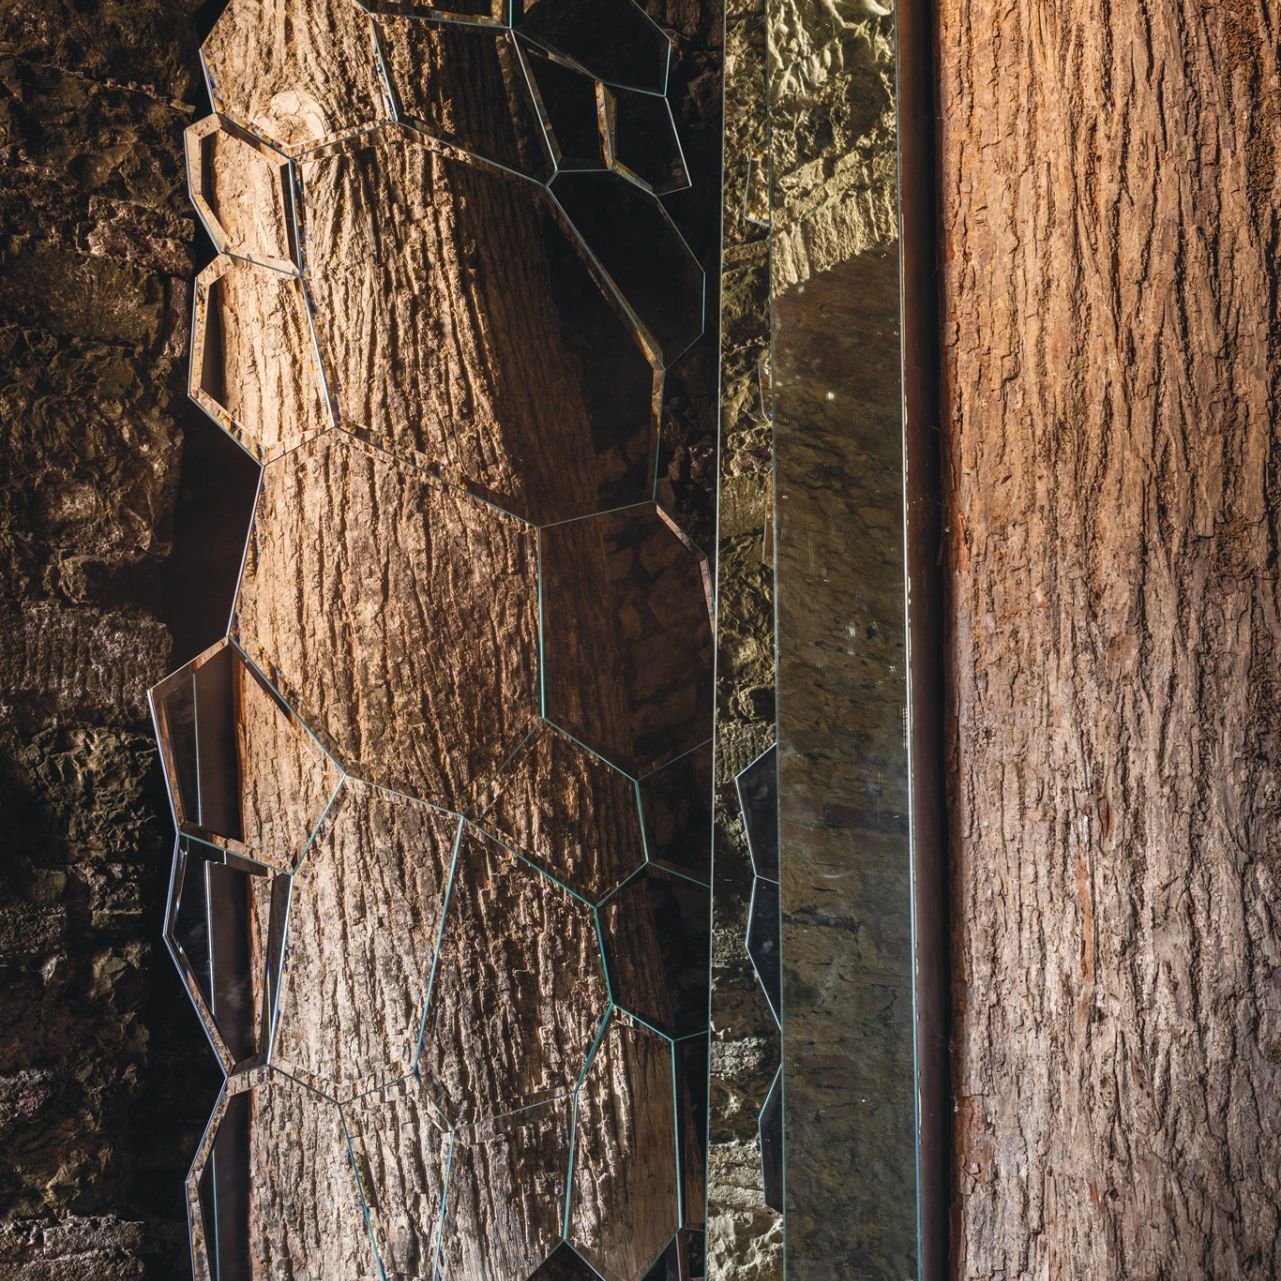   Jubilé . Reflexionsspiel zwischen dem Spiegel und dem Werk "The Tree of Ama" von Michelangelo Pistoletto. 